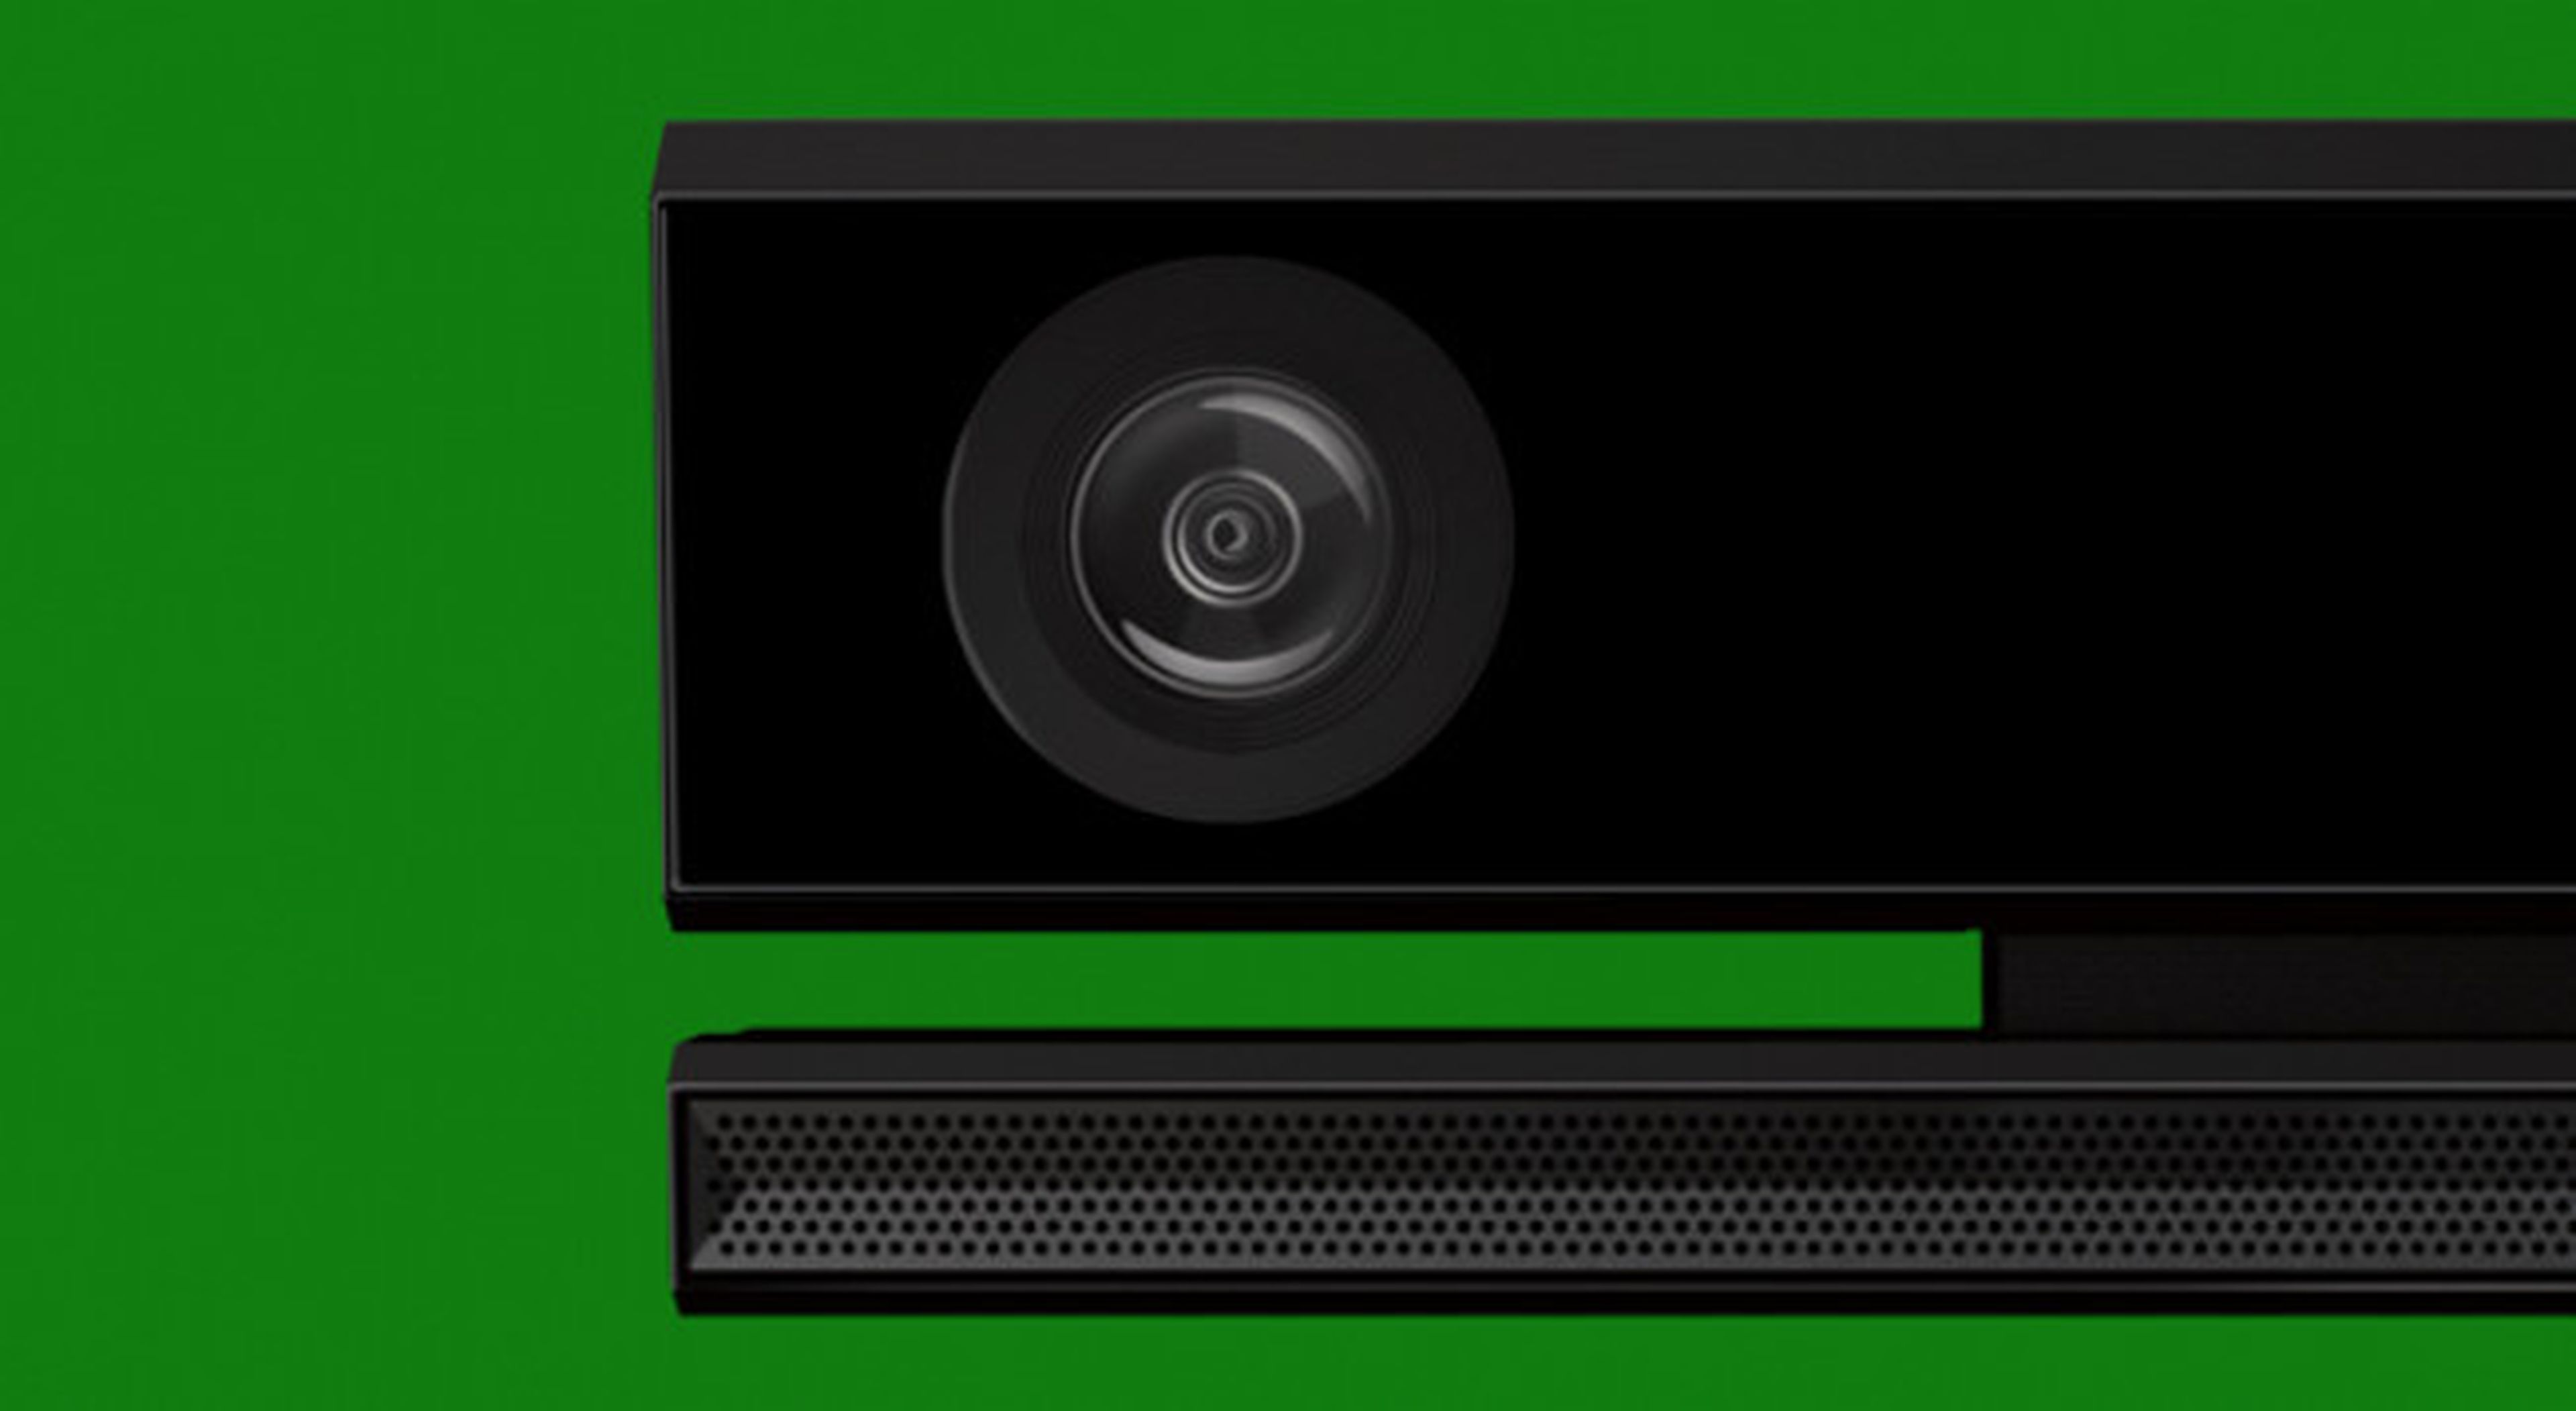 Confirmado: Xbox One graba 5 minutos de vídeo como máximo